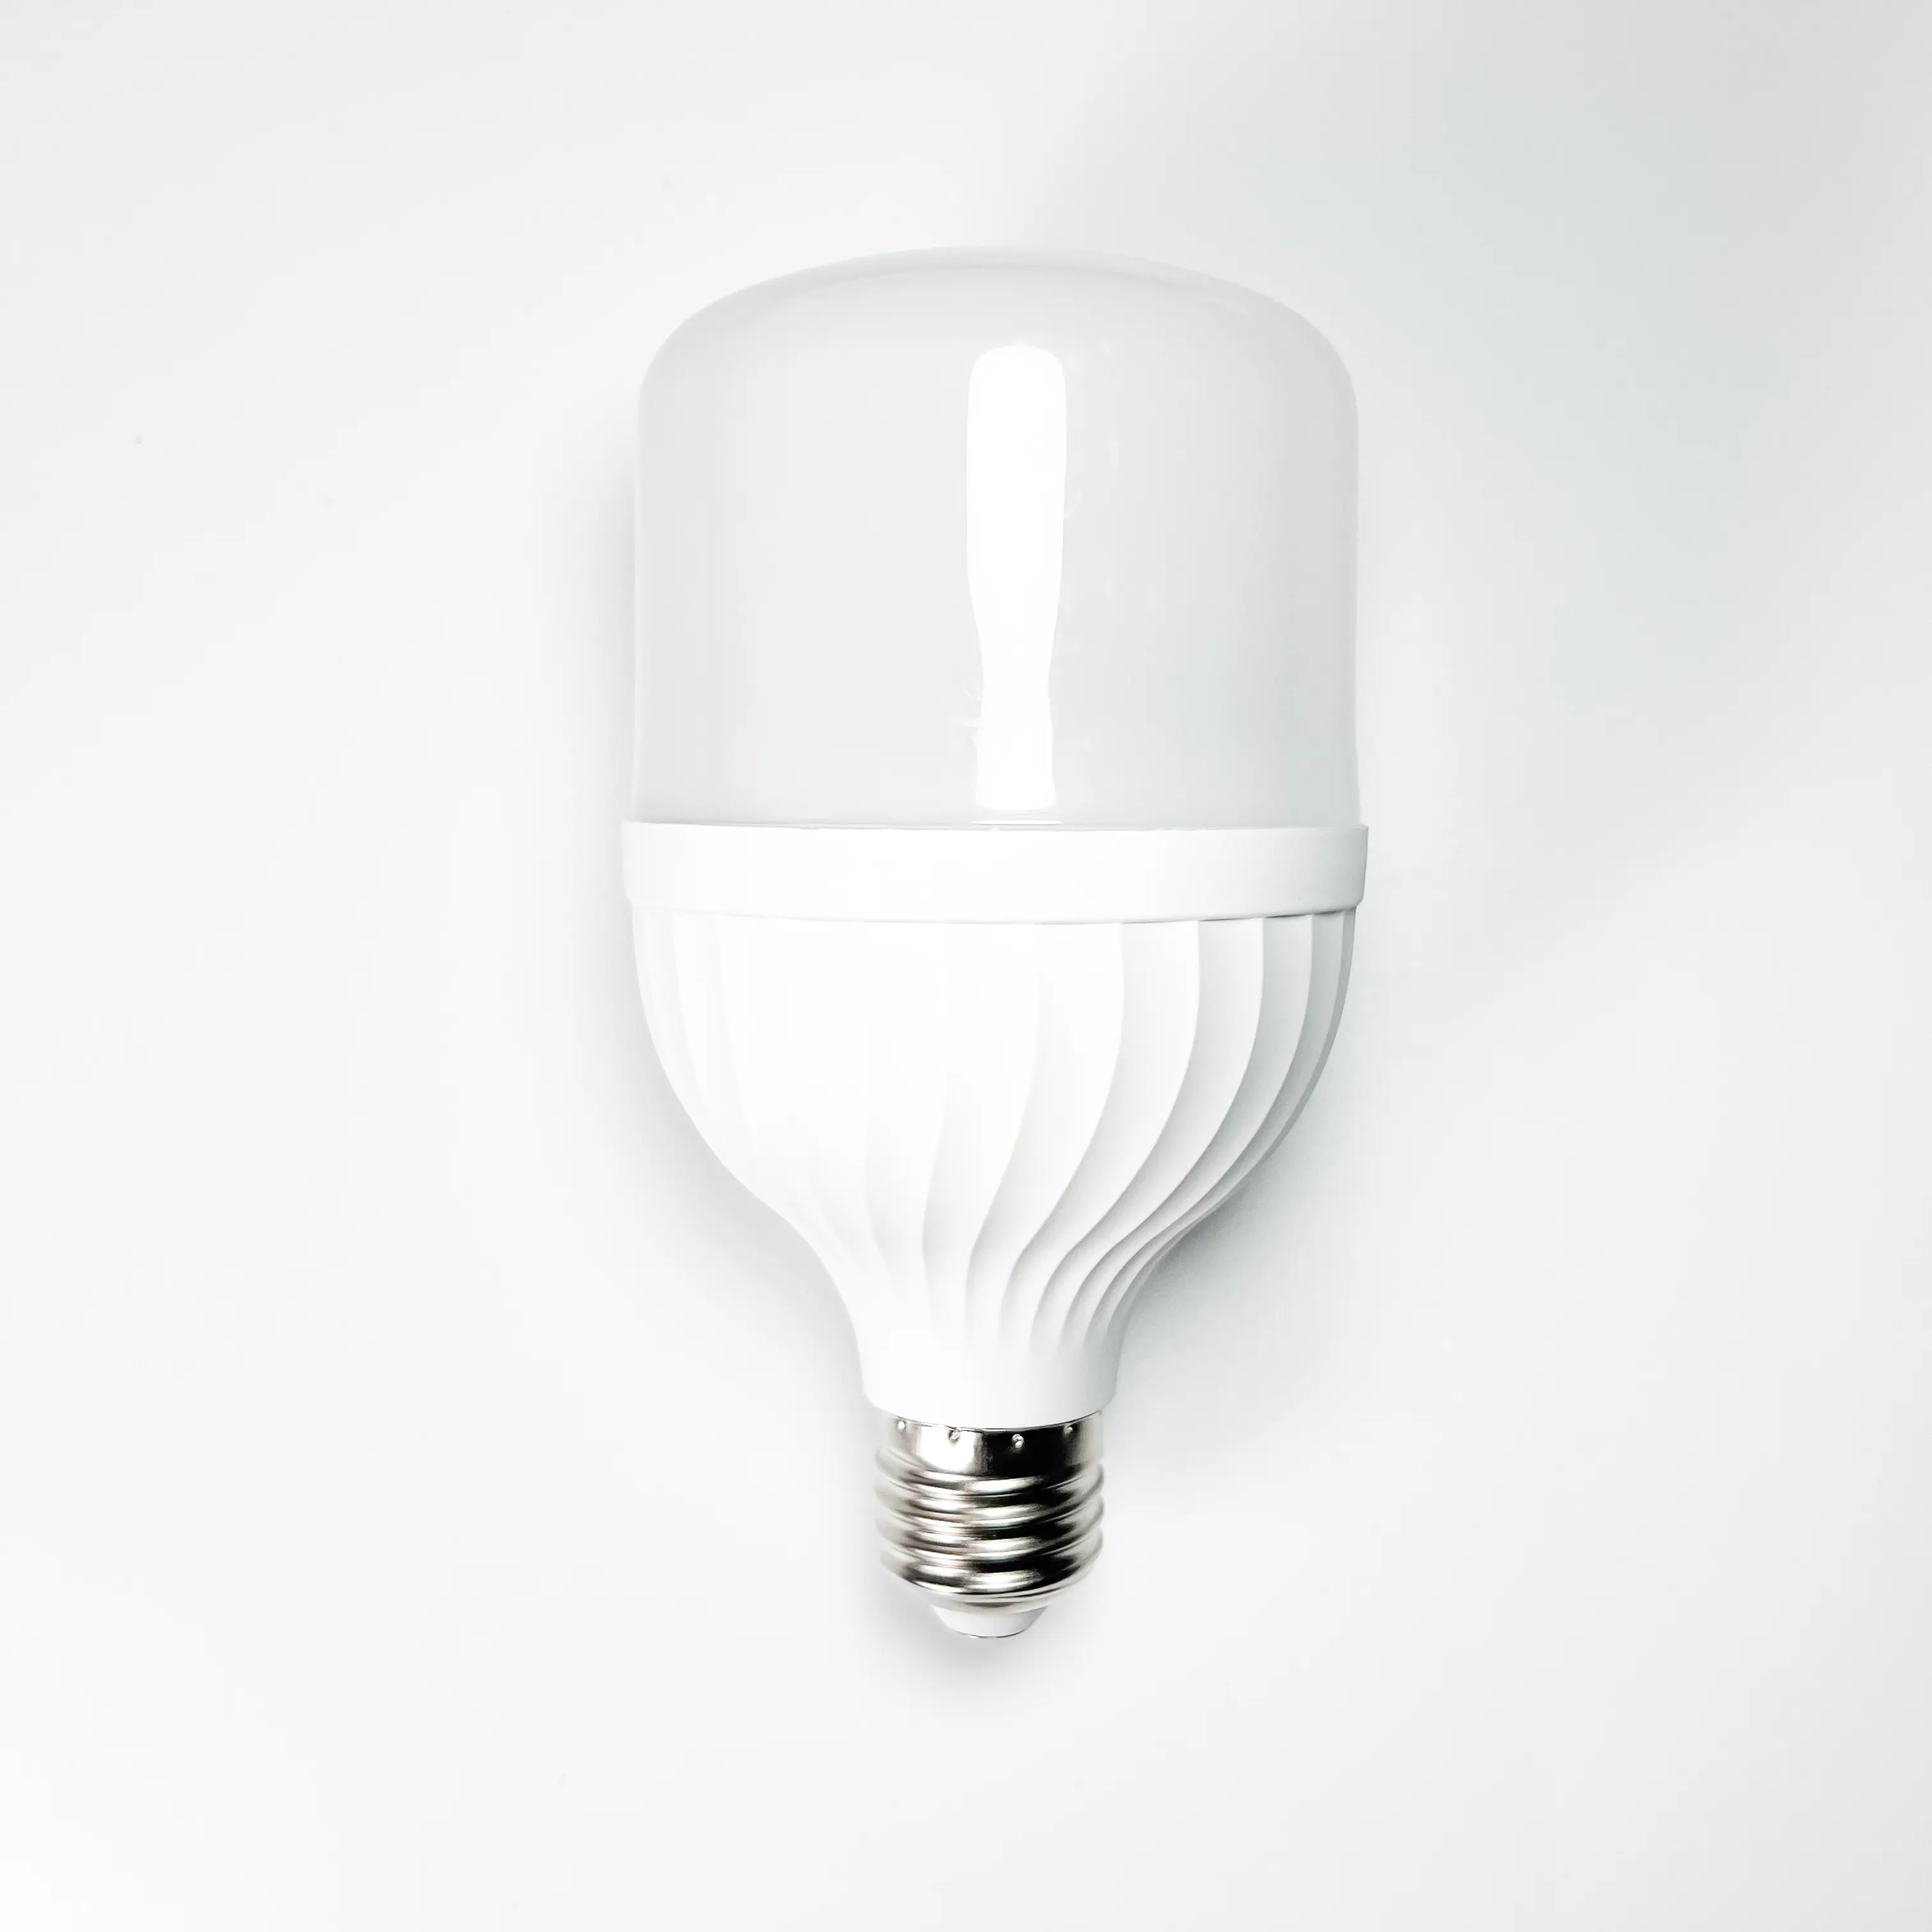 Nouvelle conception T forme 10W ampoule LED/lampe à économie d'énergie/lumière à économie d'énergie avec ampoule d'éclairage domestique haute luminosité